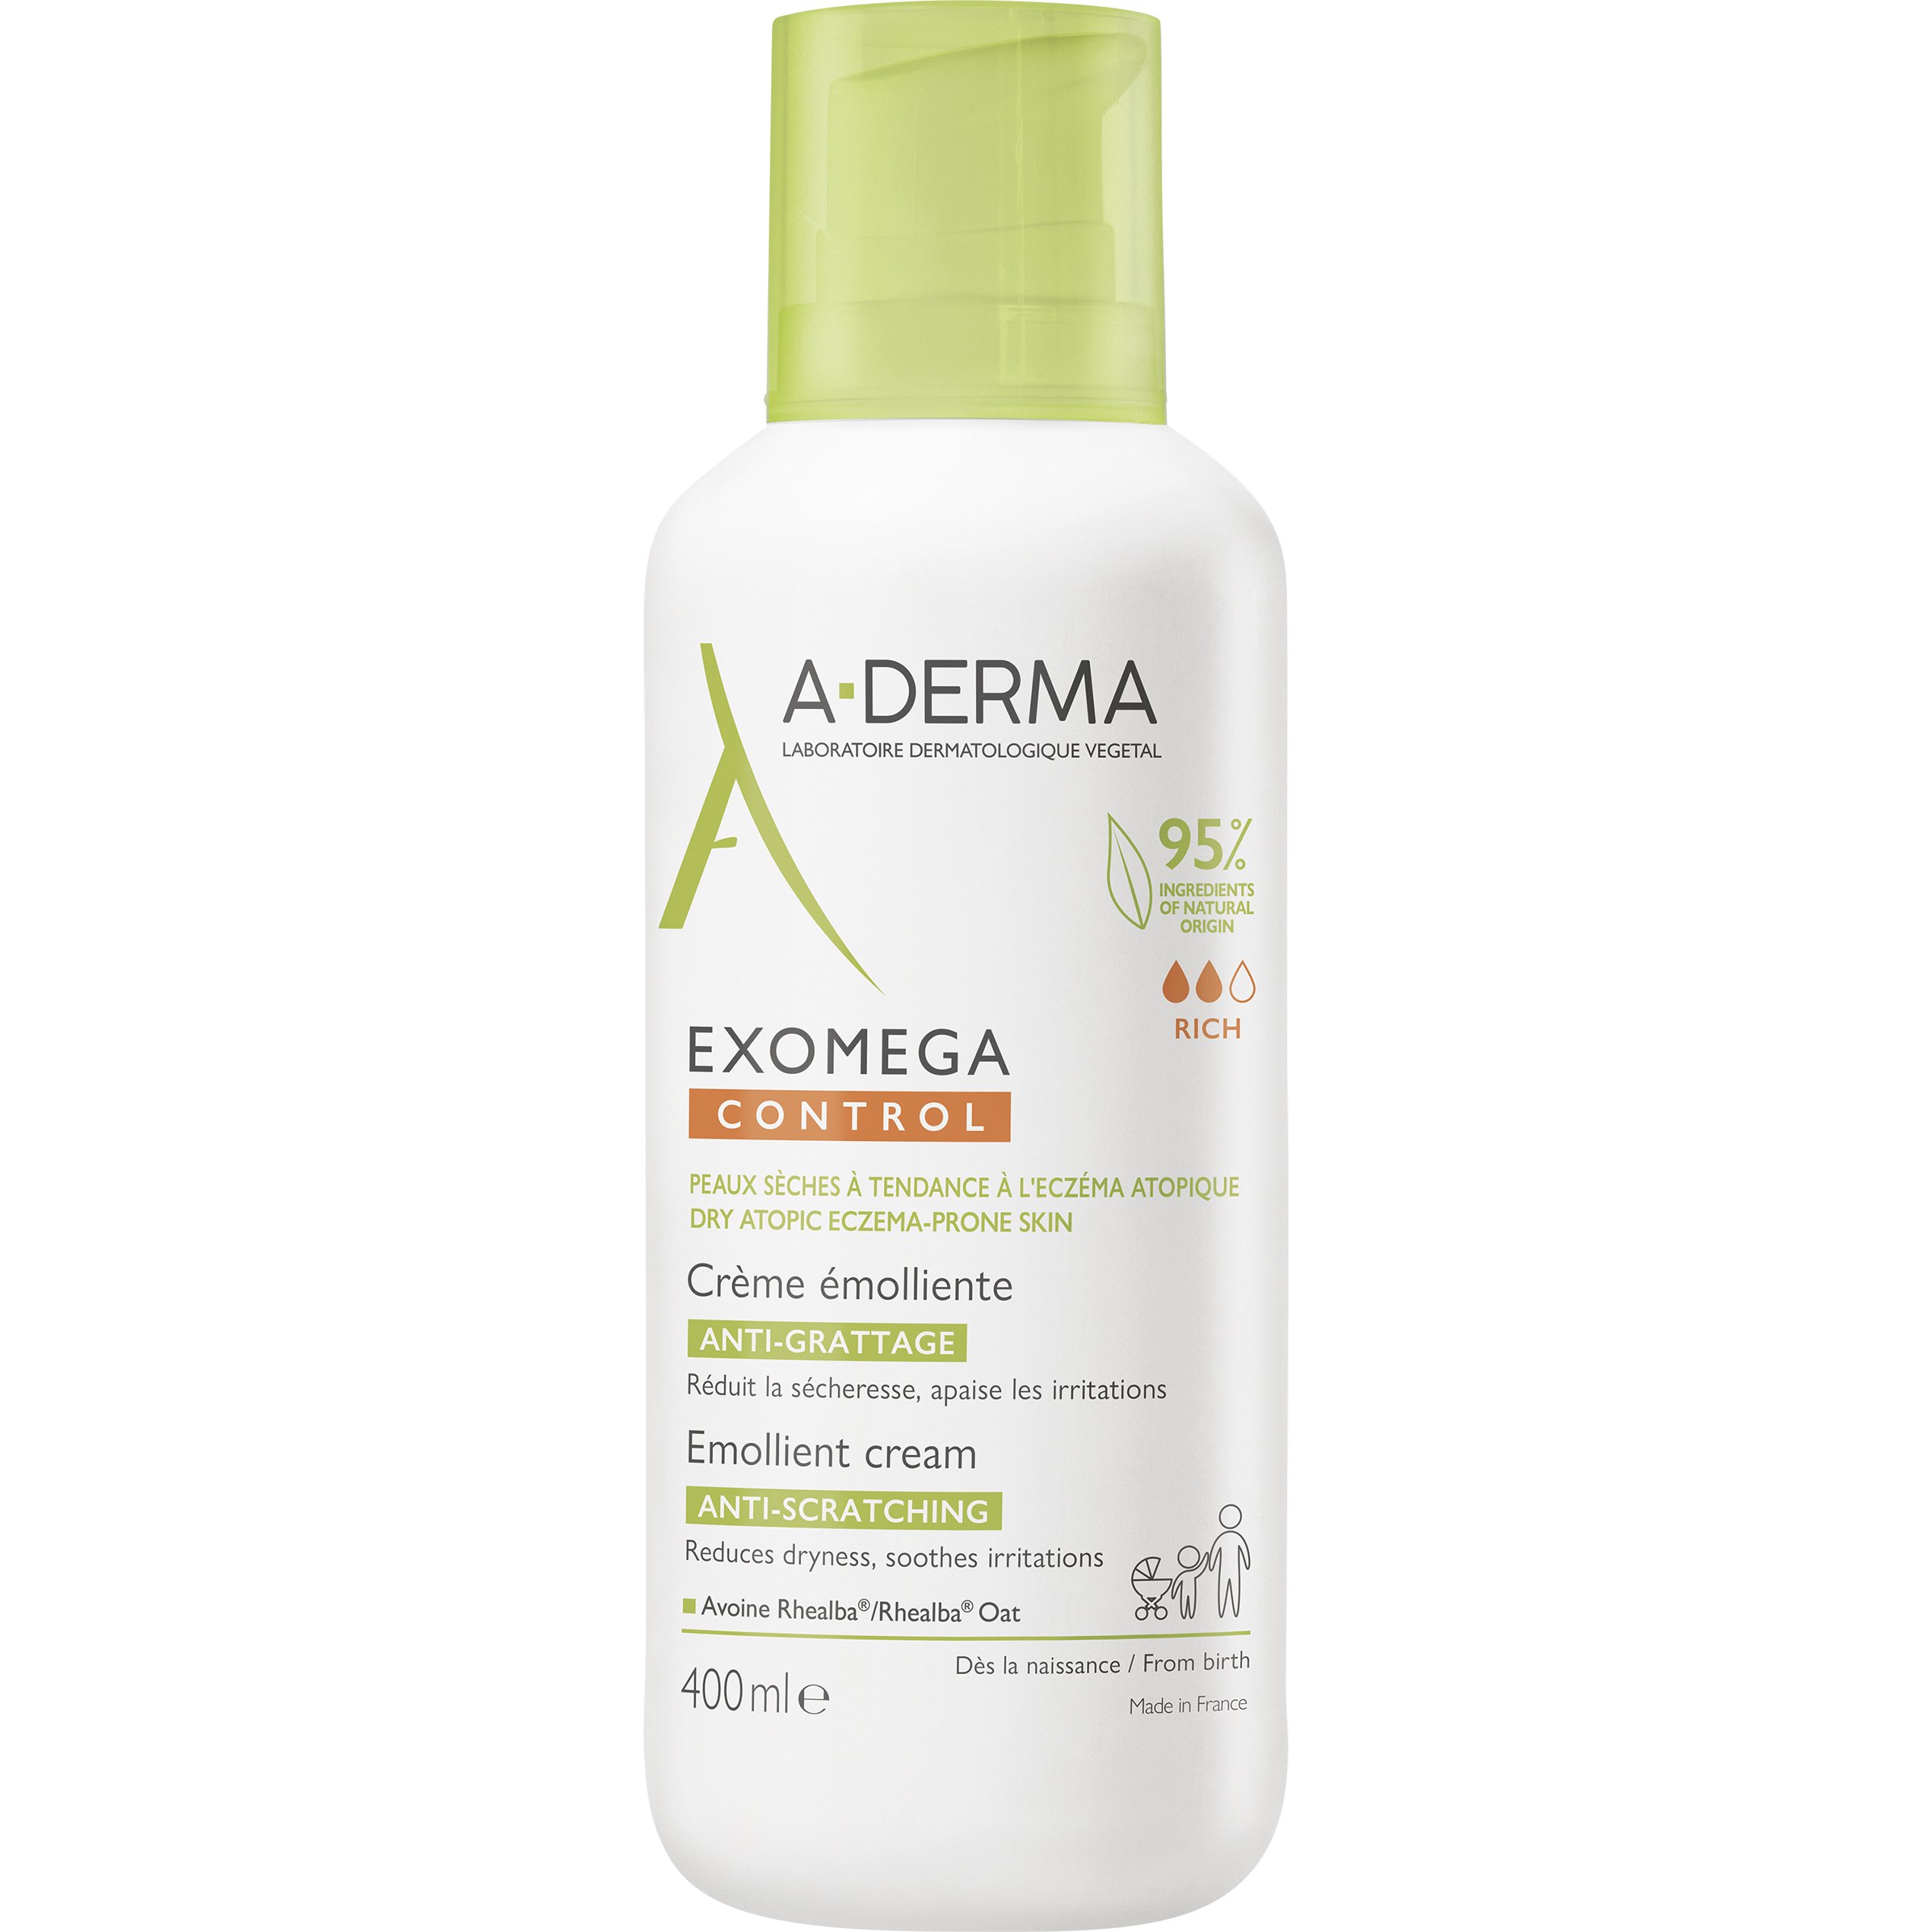 A-Derma Exomega Control Emollient Cream Μαλακτική, Καταπραϋντική Κρέμα Προσώπου - Σώματος Κατάλληλη για Ατοπικό ή Πολύ Ξηρό Δέρμα 400ml